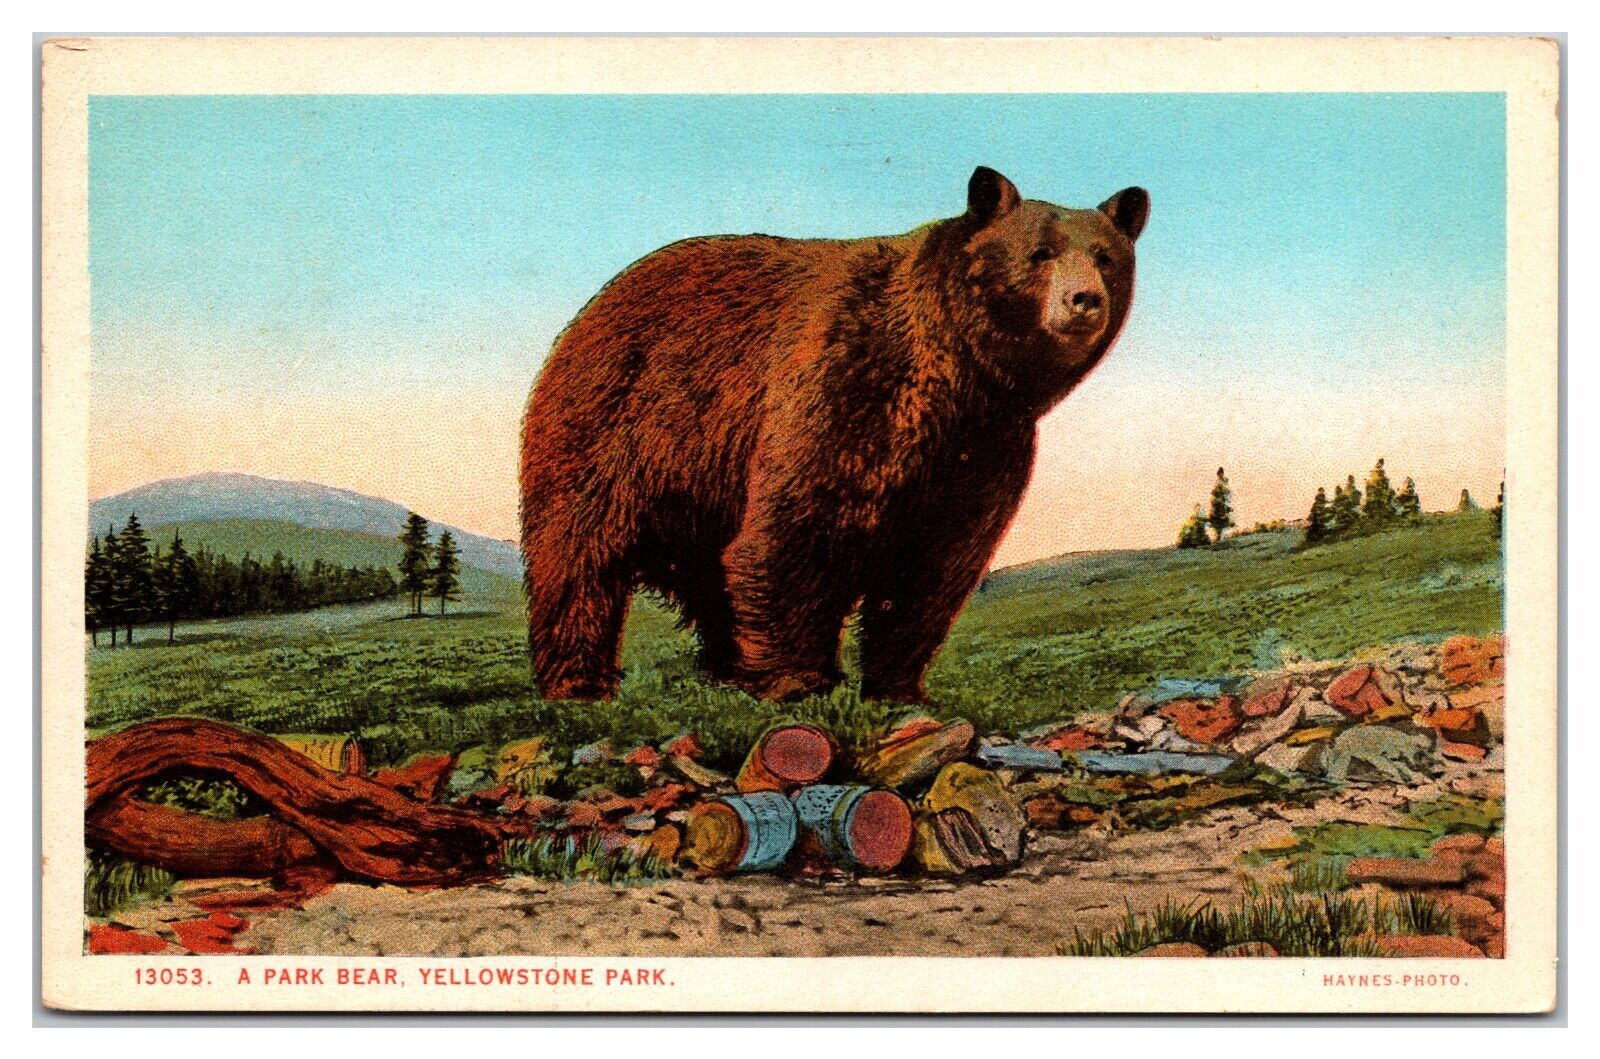 A Park Bear, Yellowstone Park